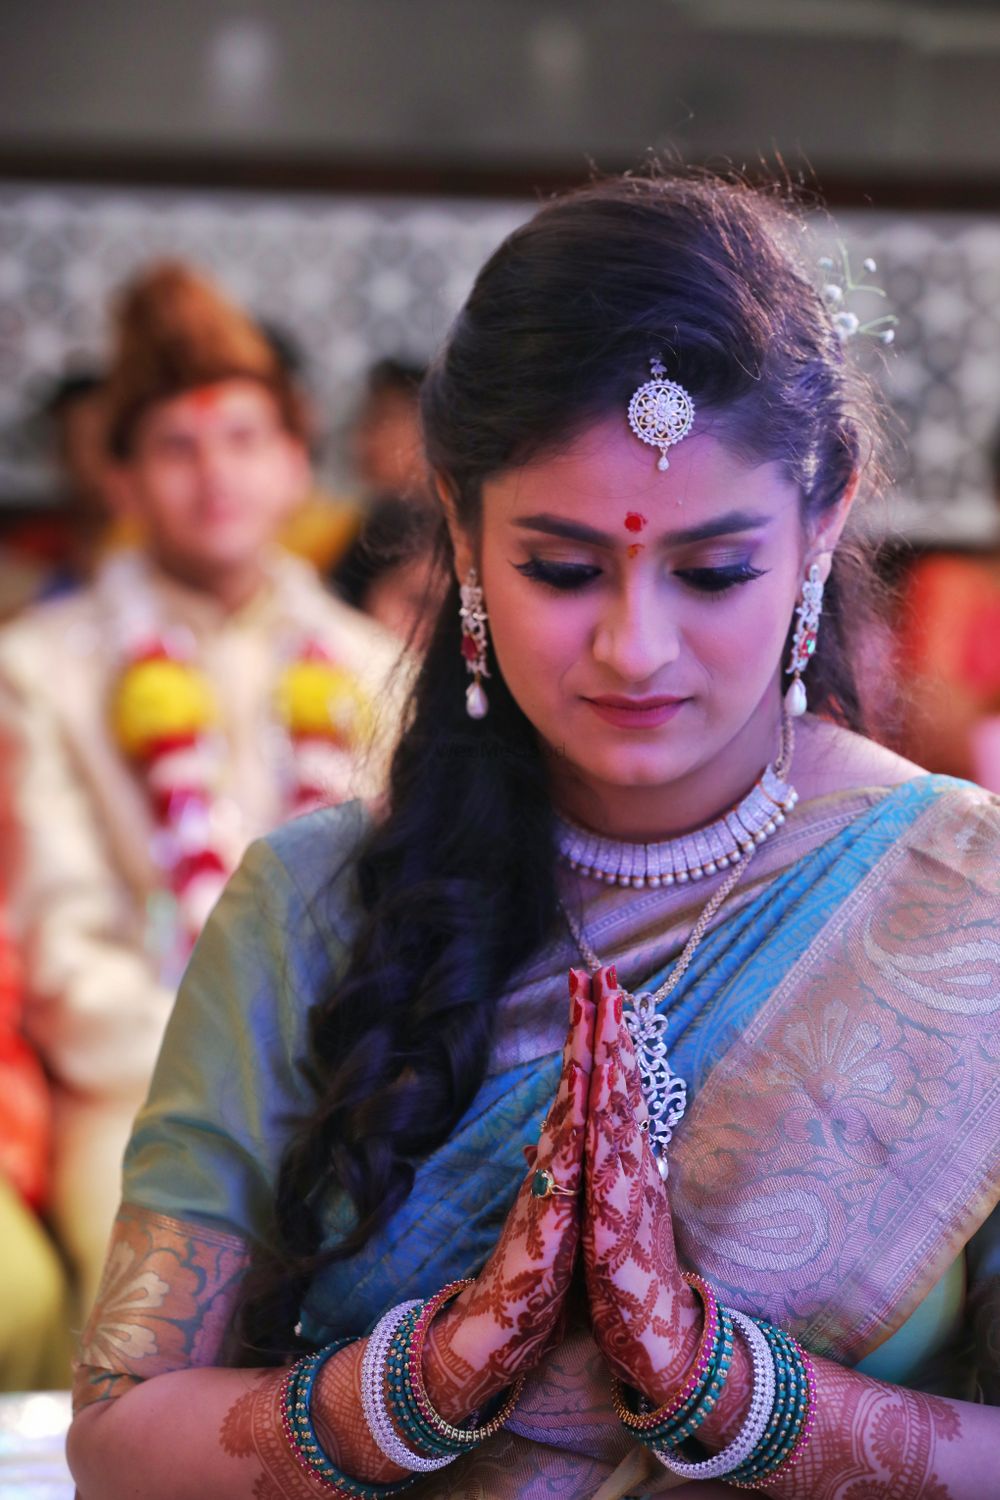 Photo From Maharastian wedding - By Tab Media Production